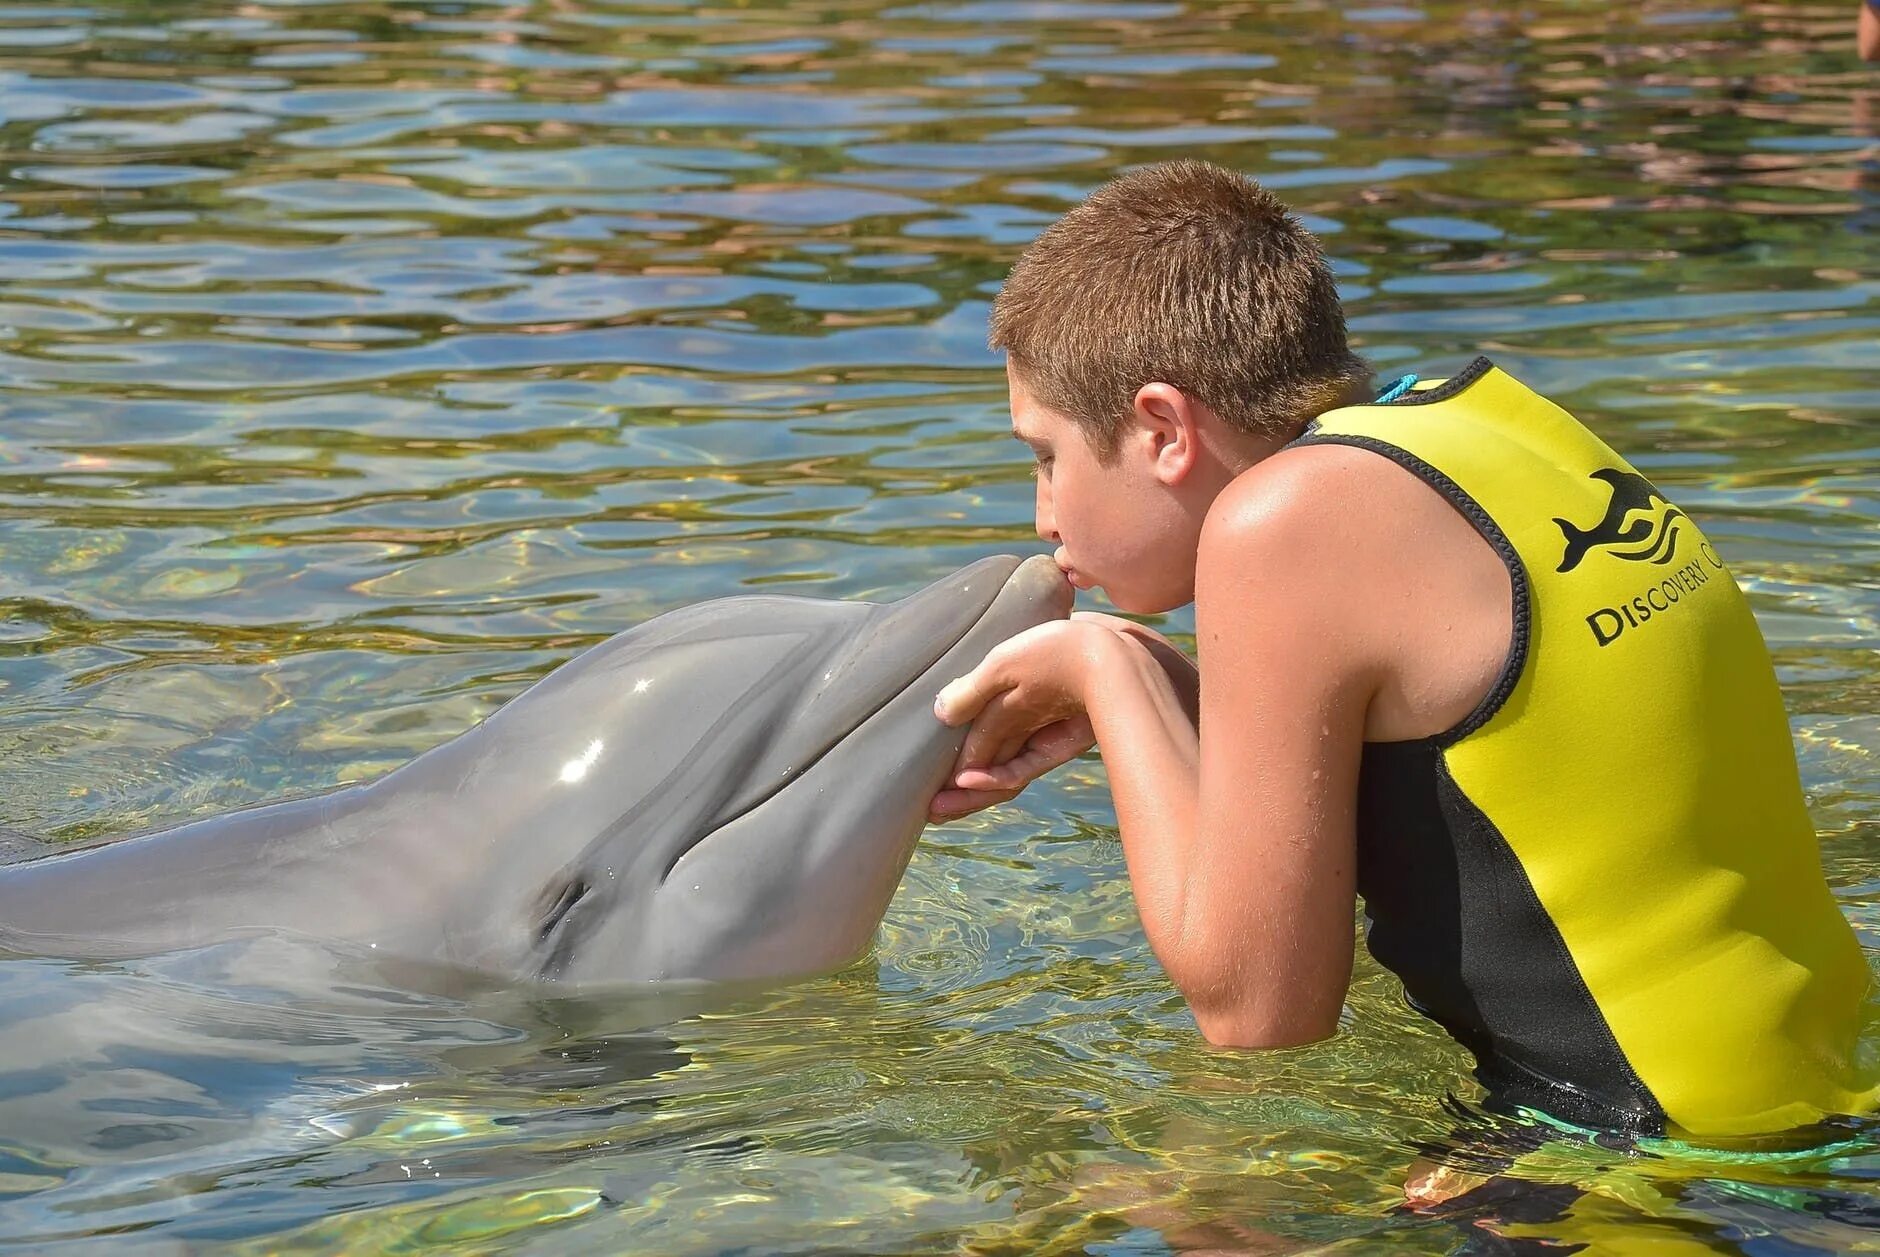 Человек Дельфин. Дельфины и люди. Мальчик Дельфин. Chelovel dilfin. Удовольствие с дельфином